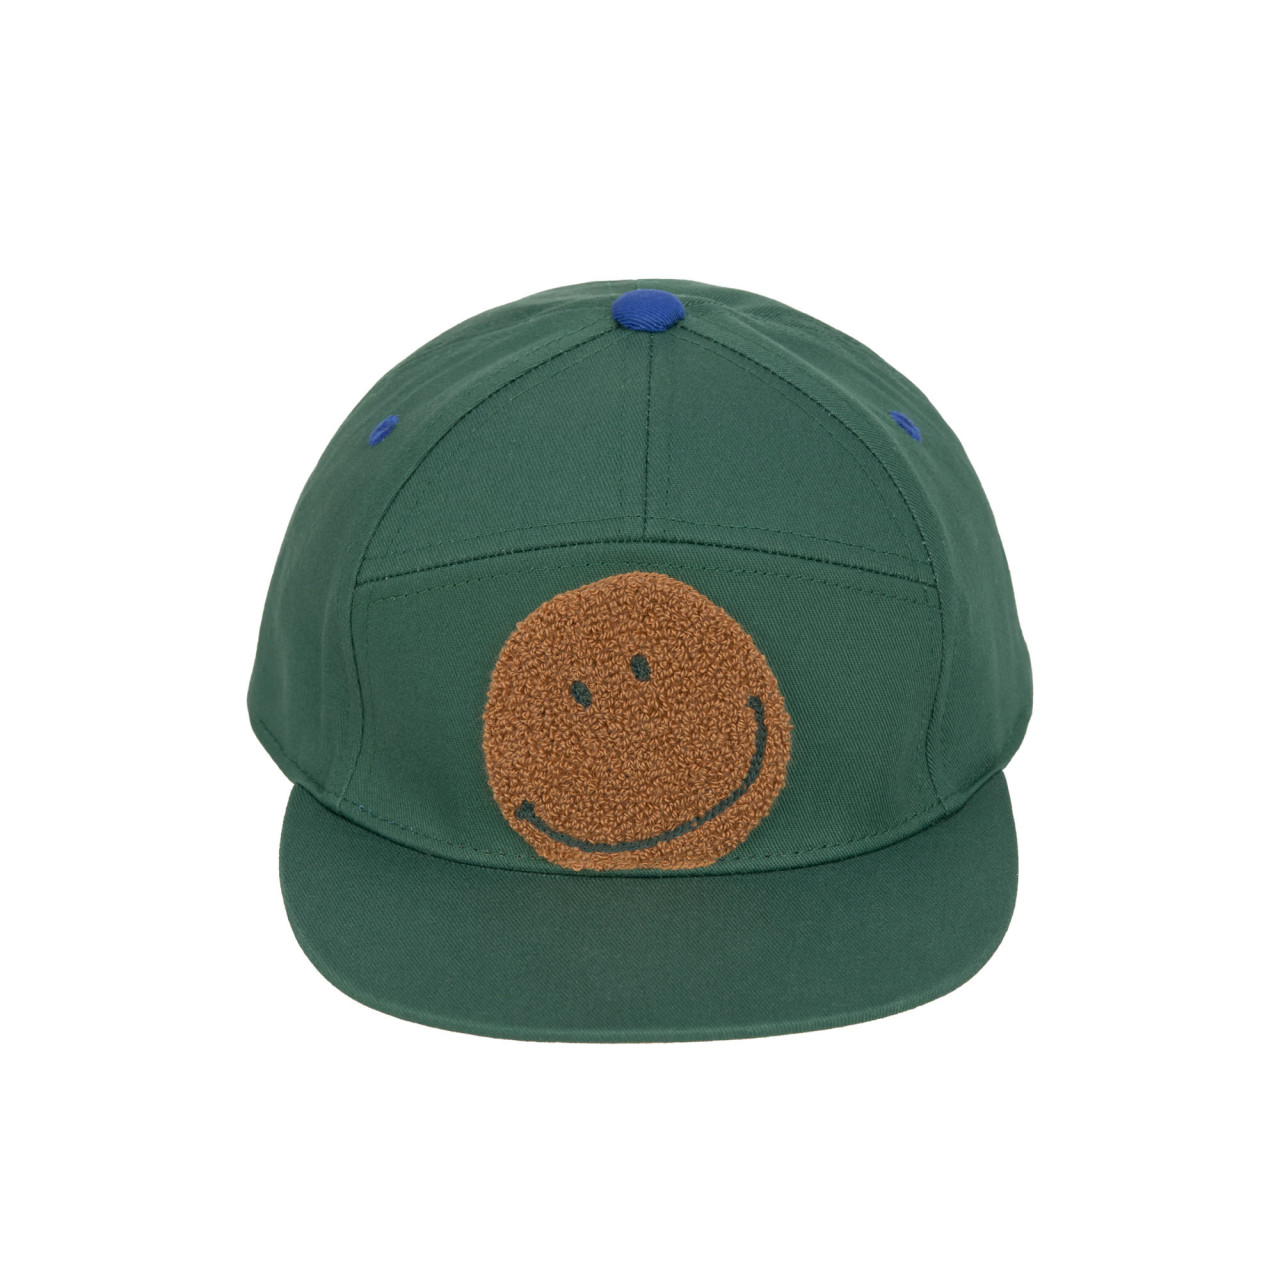 Mütze&Co Schildkappe braun/grün 2-6 Jahre Lässig Smiley